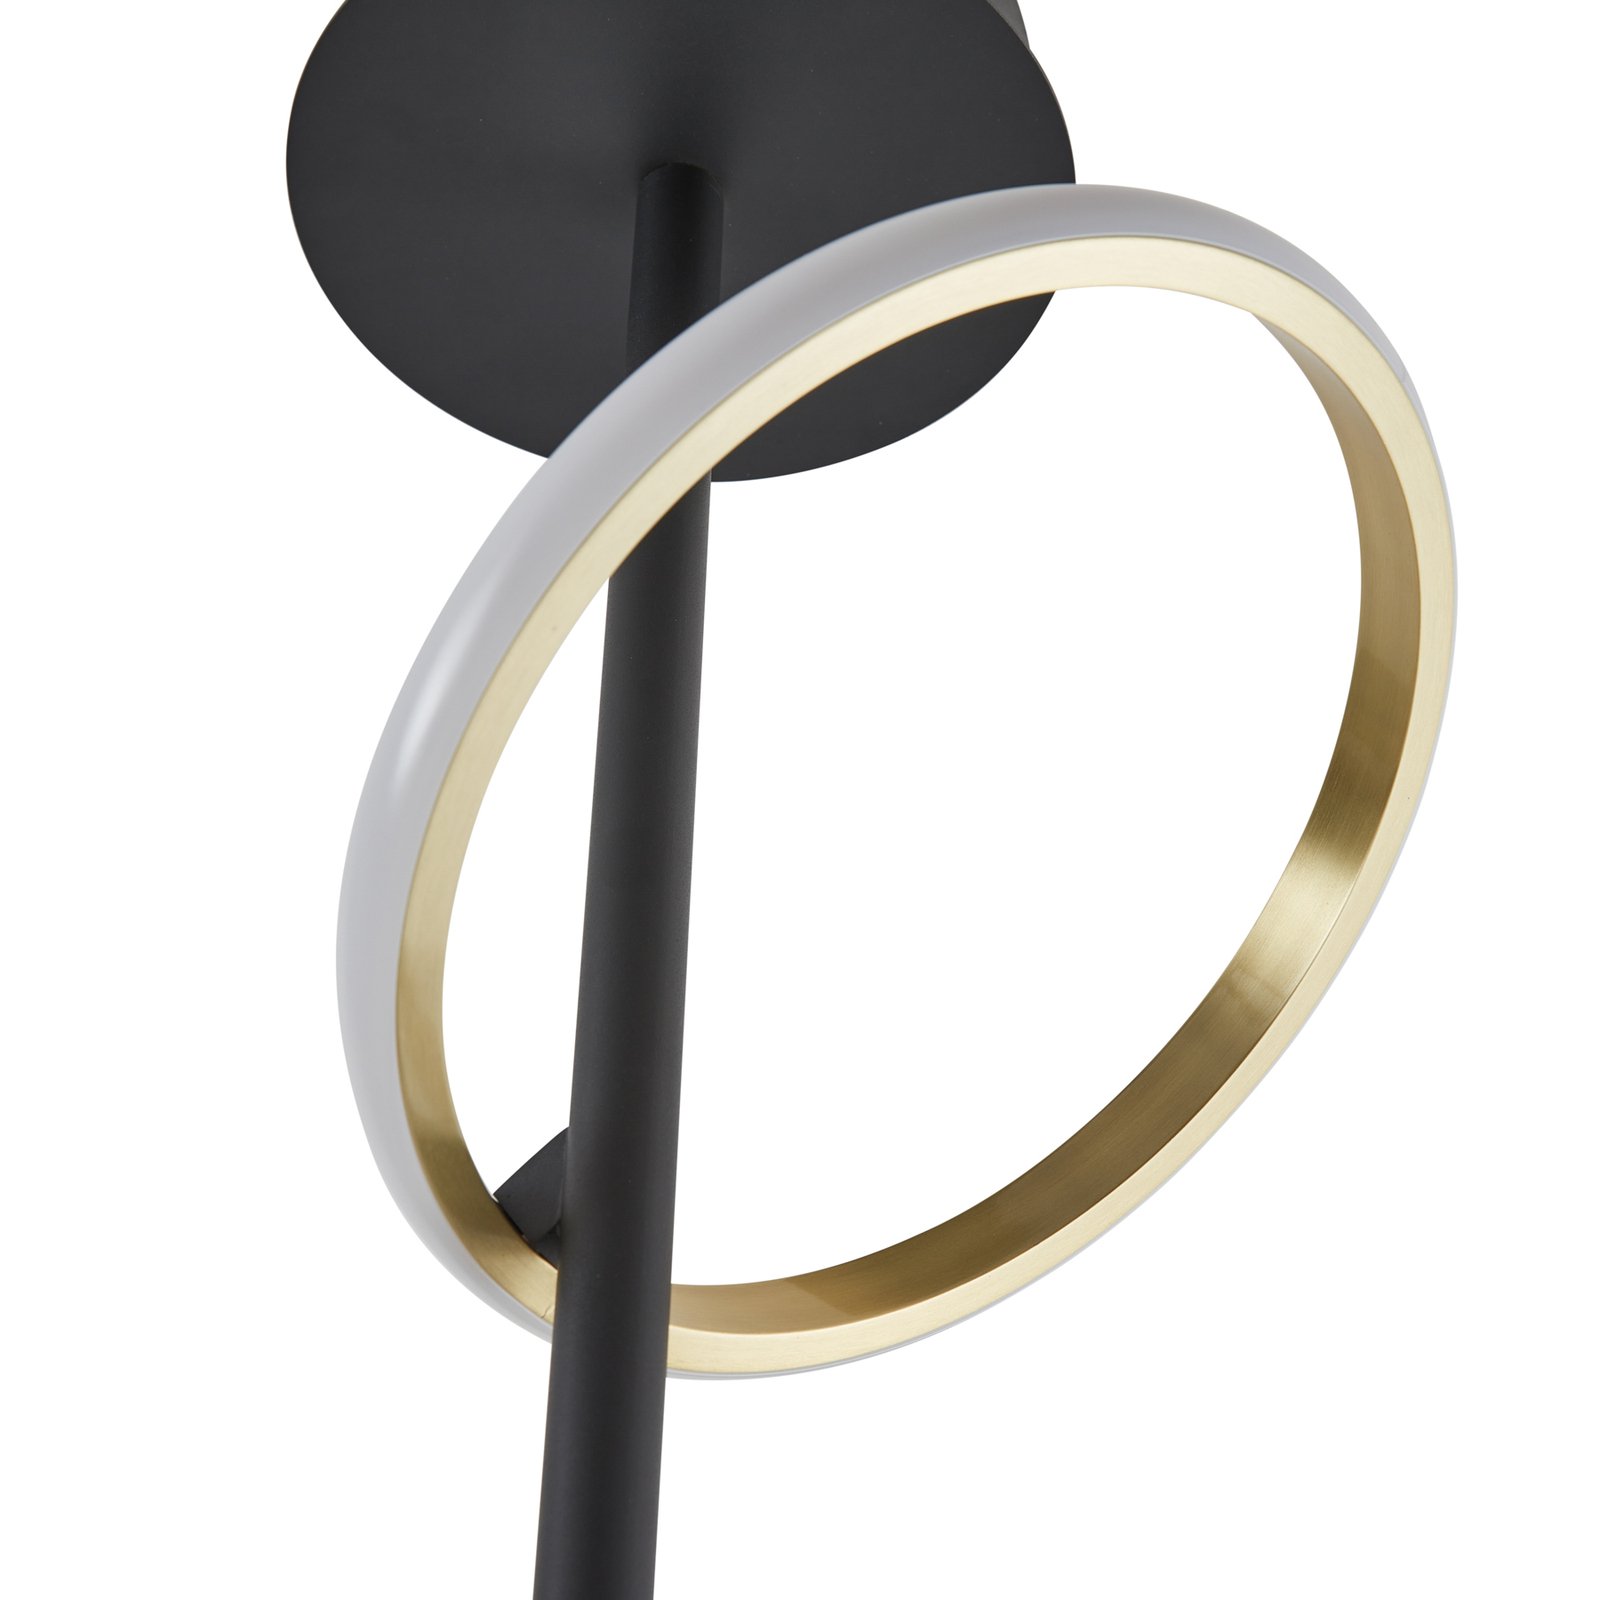 Stropné svietidlo Lucande LED Madu, čierna farba, kov, výška 75 cm